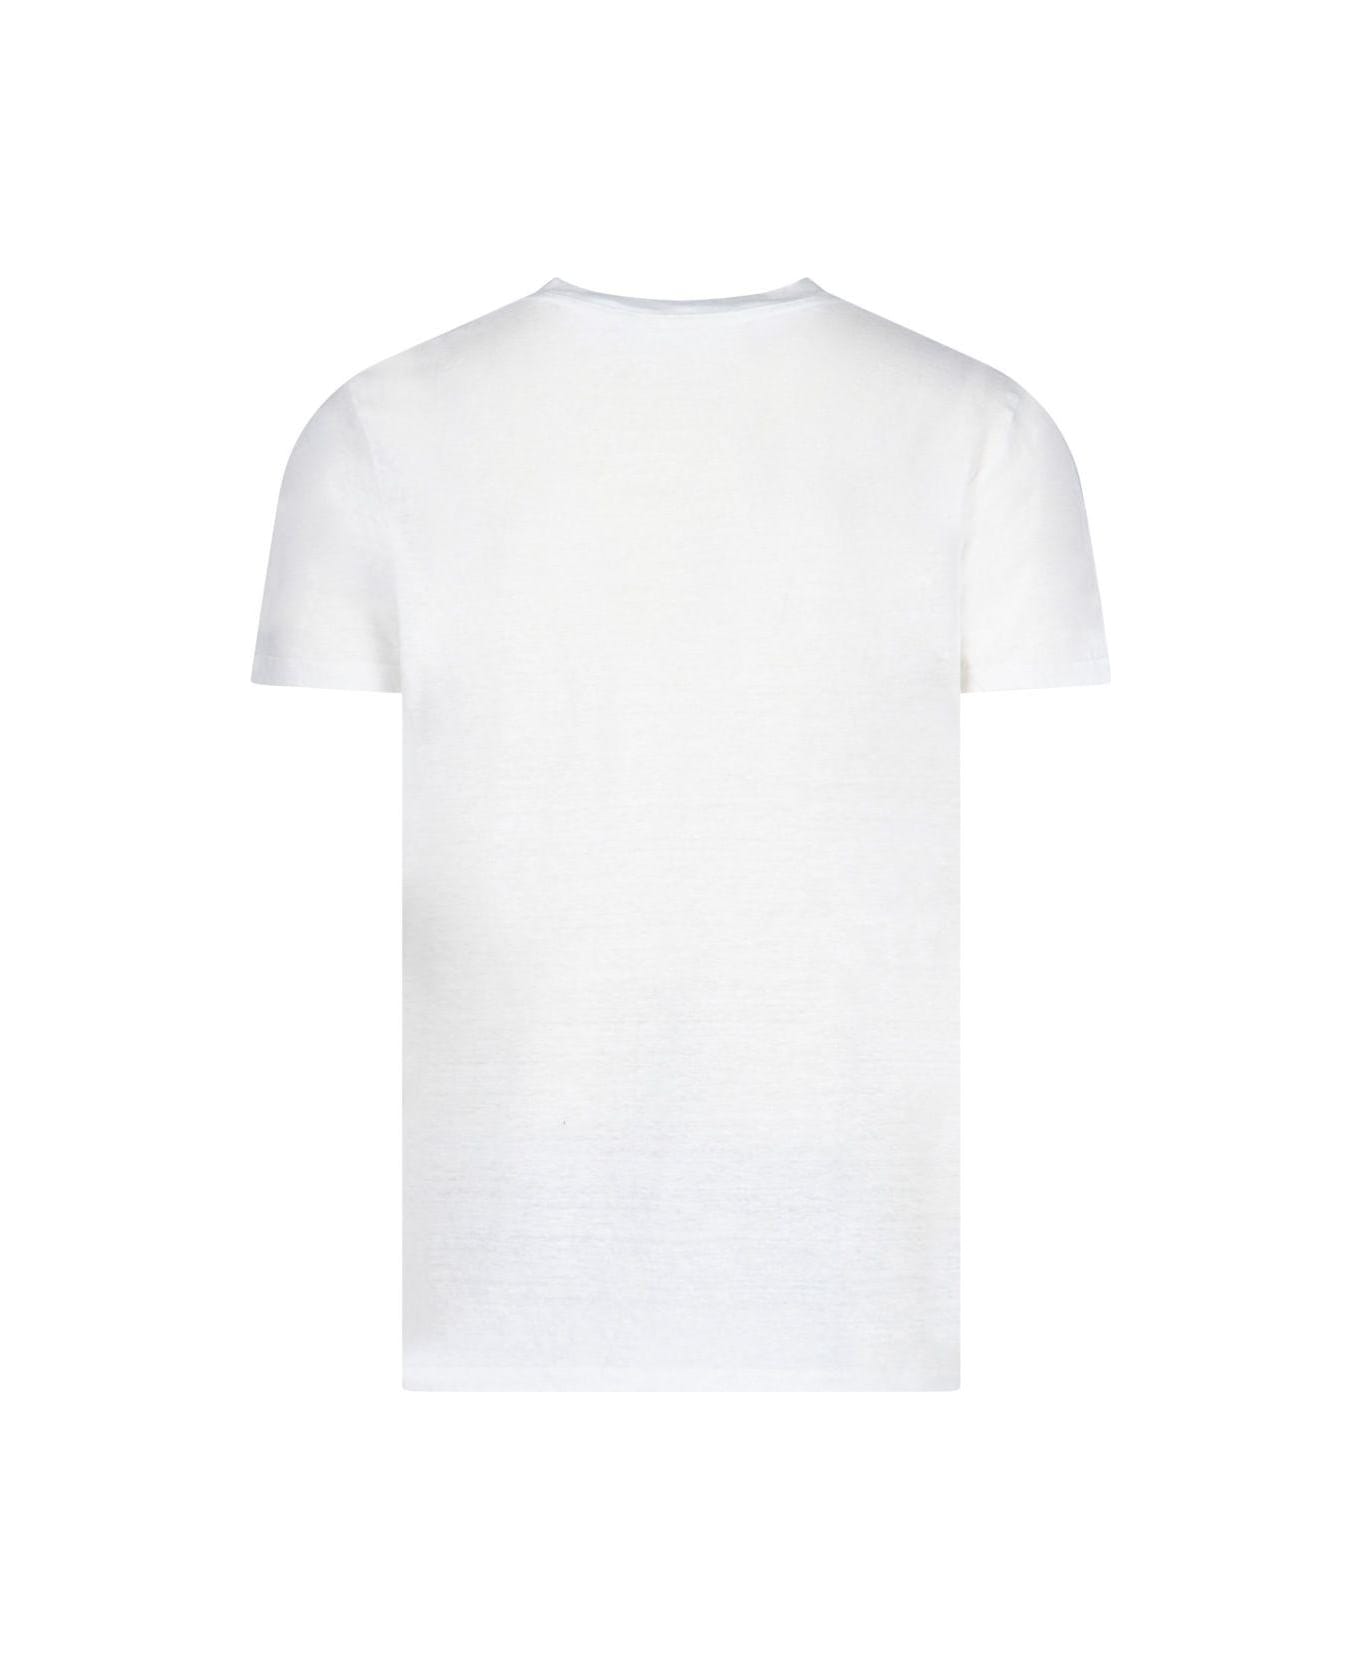 Isabel Marant 'karman' T-shirt - White